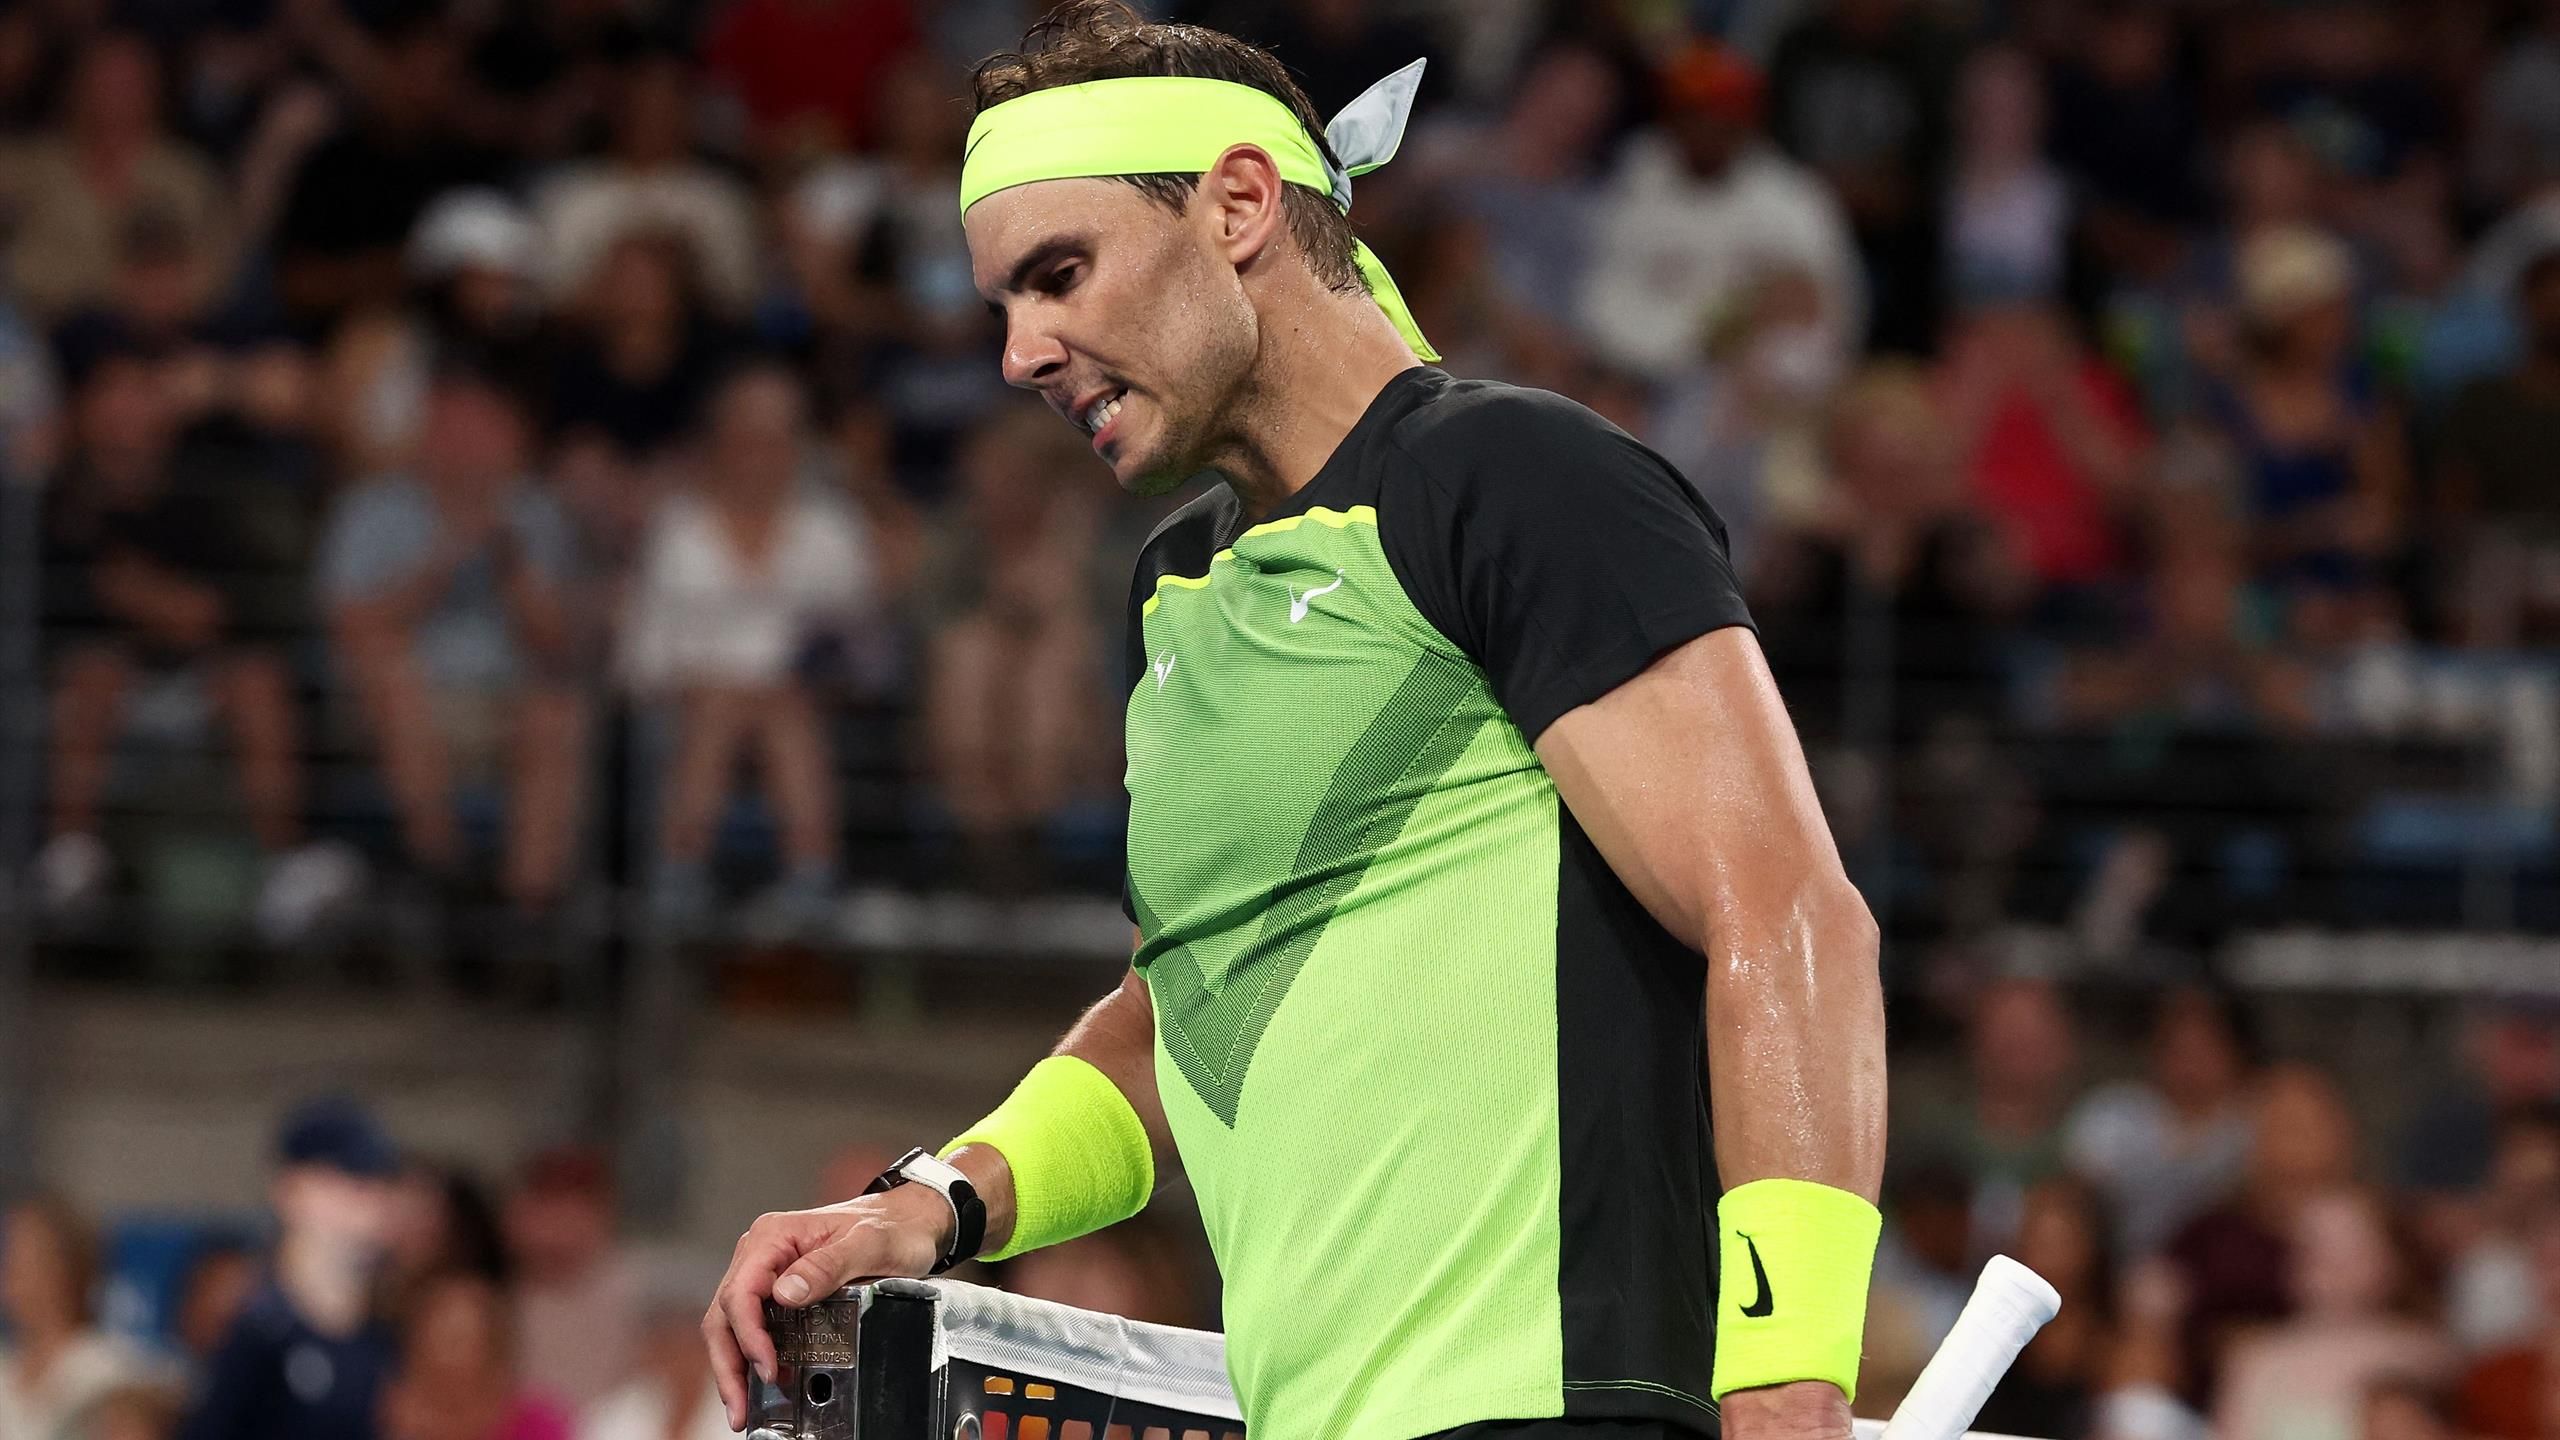 Rafael Nadal kassierte neue Niederlage beim United Cup in Australien - Alex de Minaur setzt sich in Sydney durch - Tennis Video